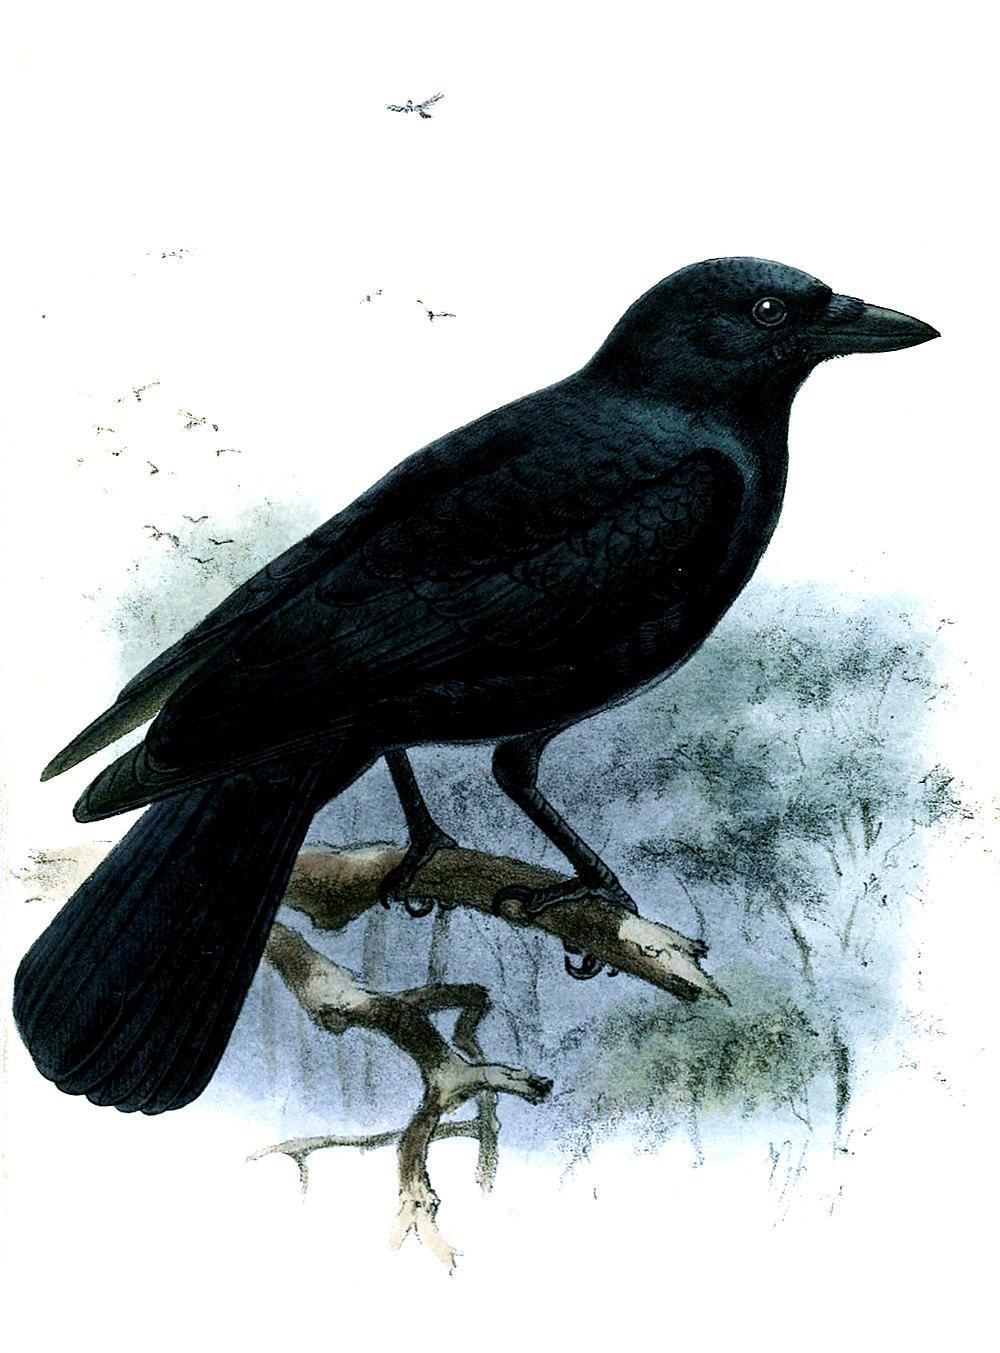 新喀鸦 / New Caledonian Crow / Corvus moneduloides